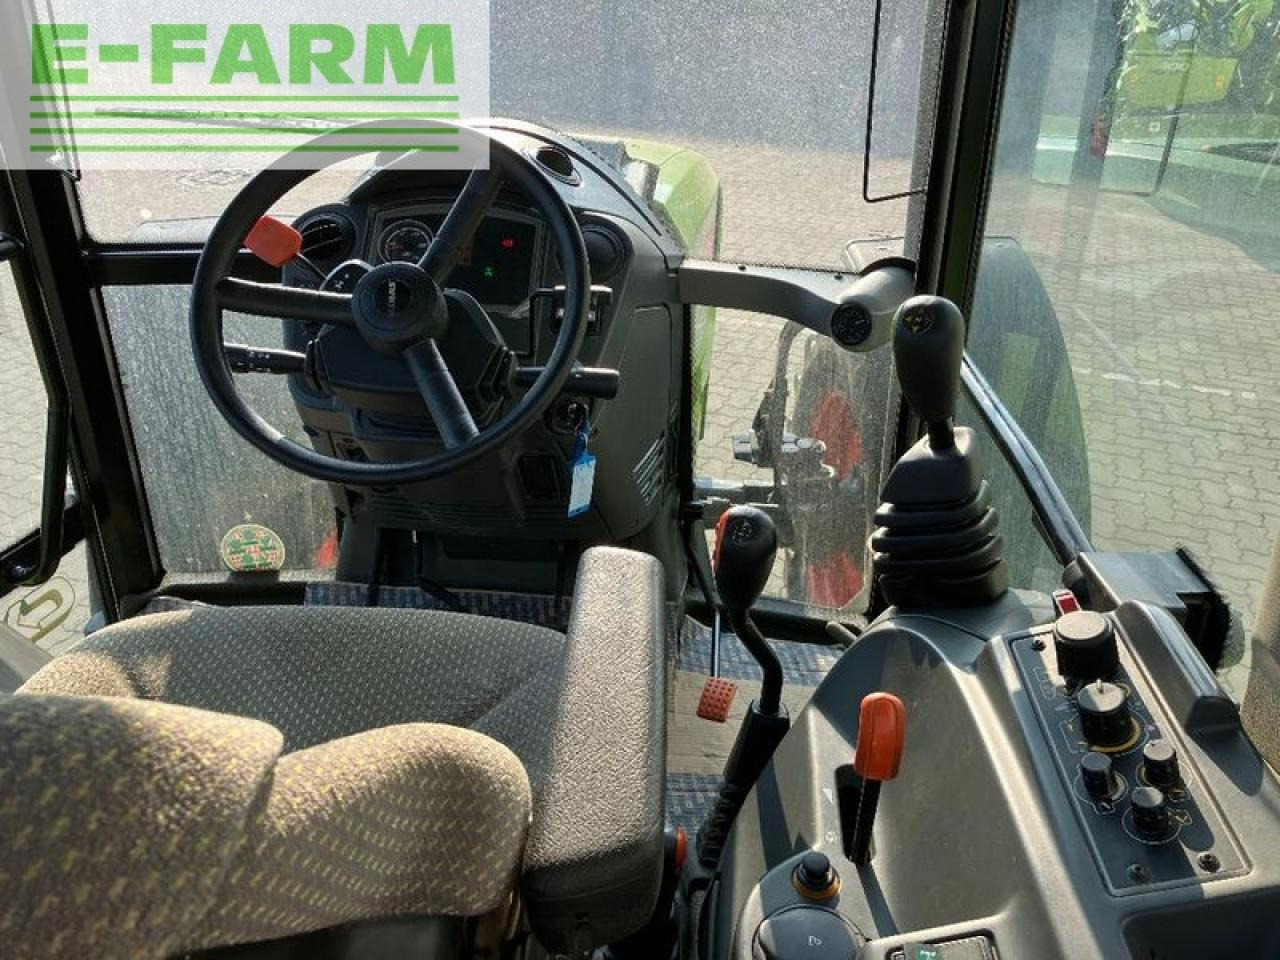 Farm tractor CLAAS axos 340 cx